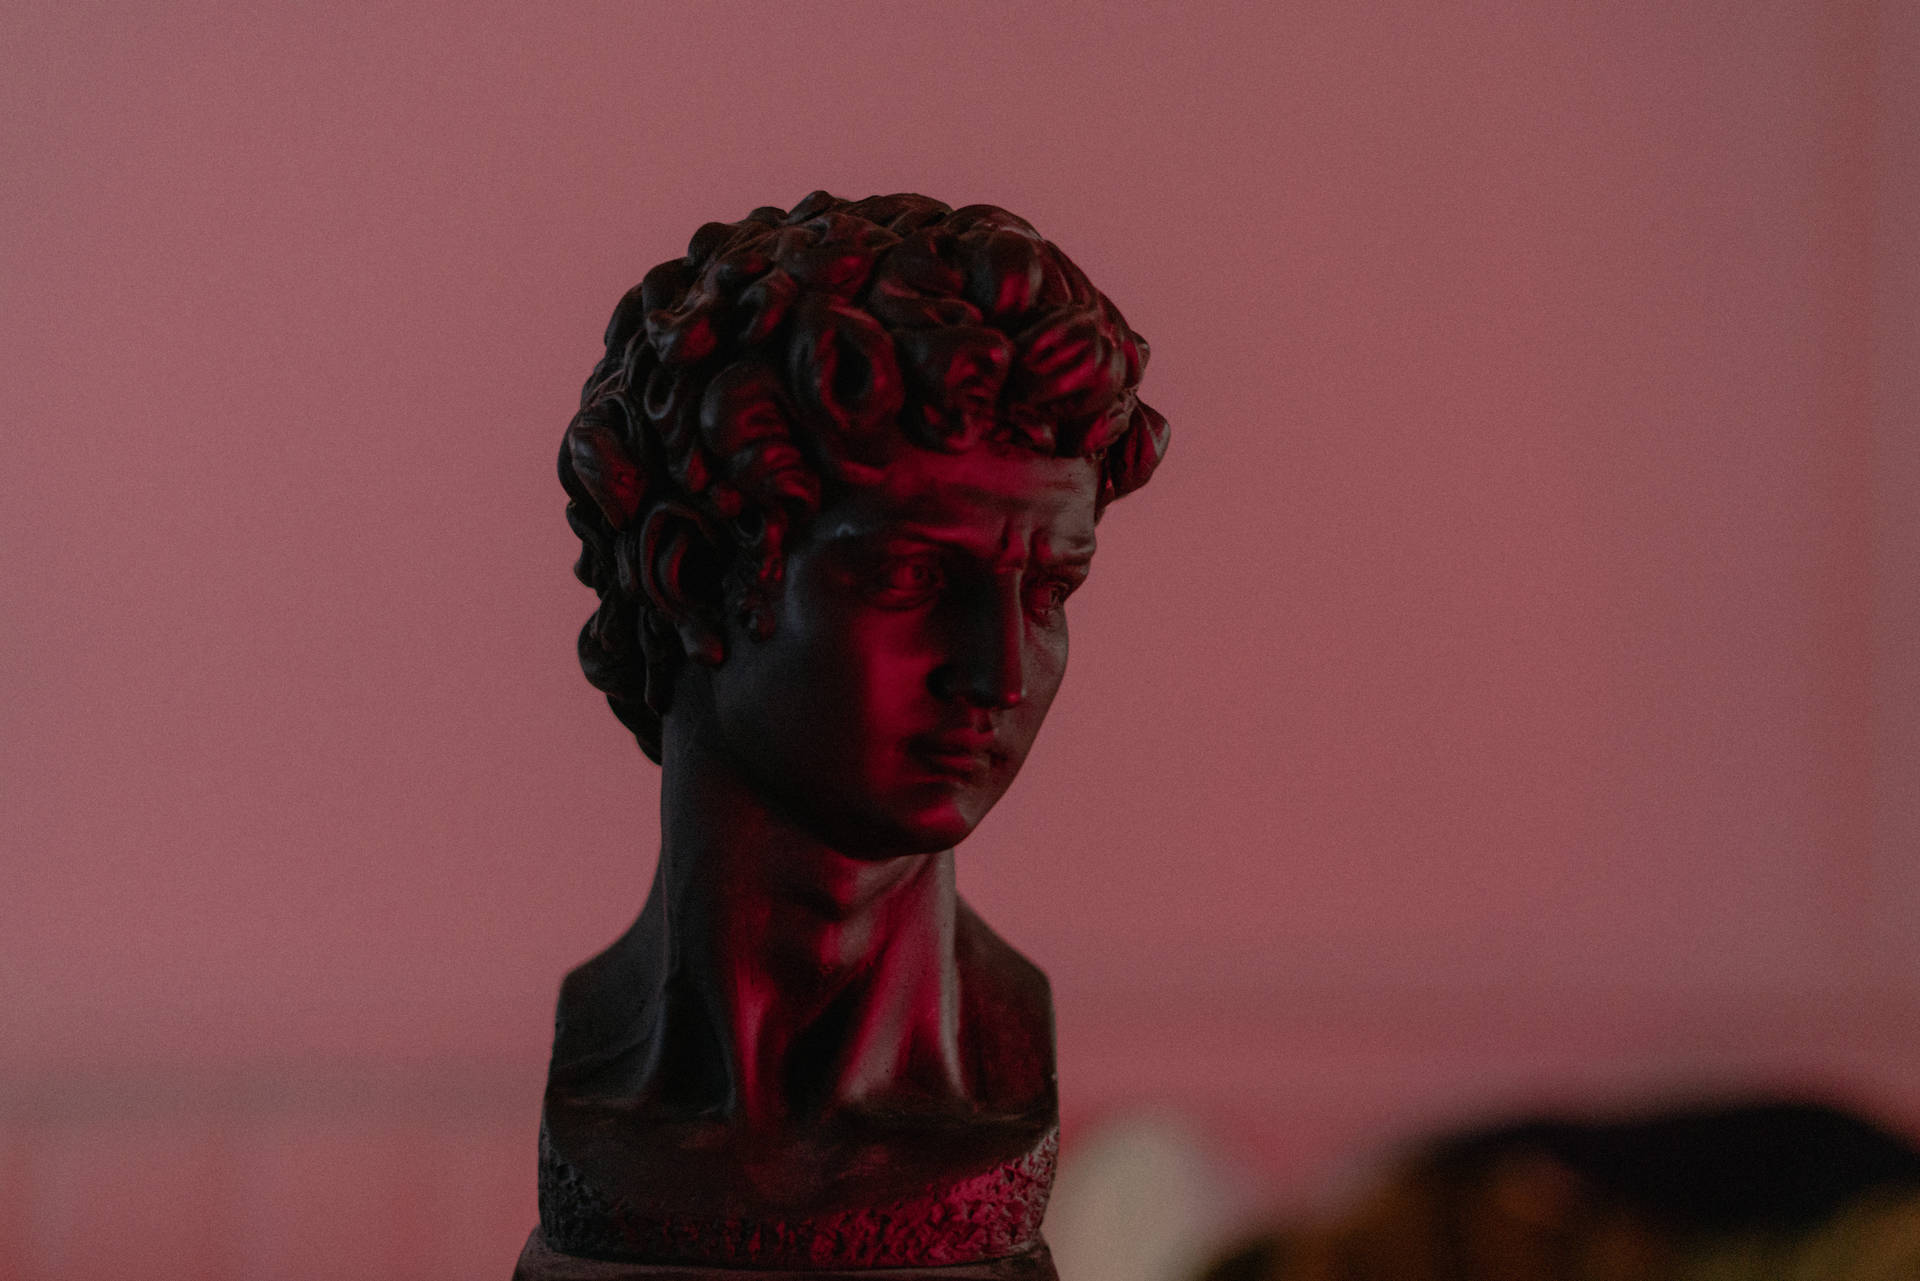 Dark Pink David Sculpture Background